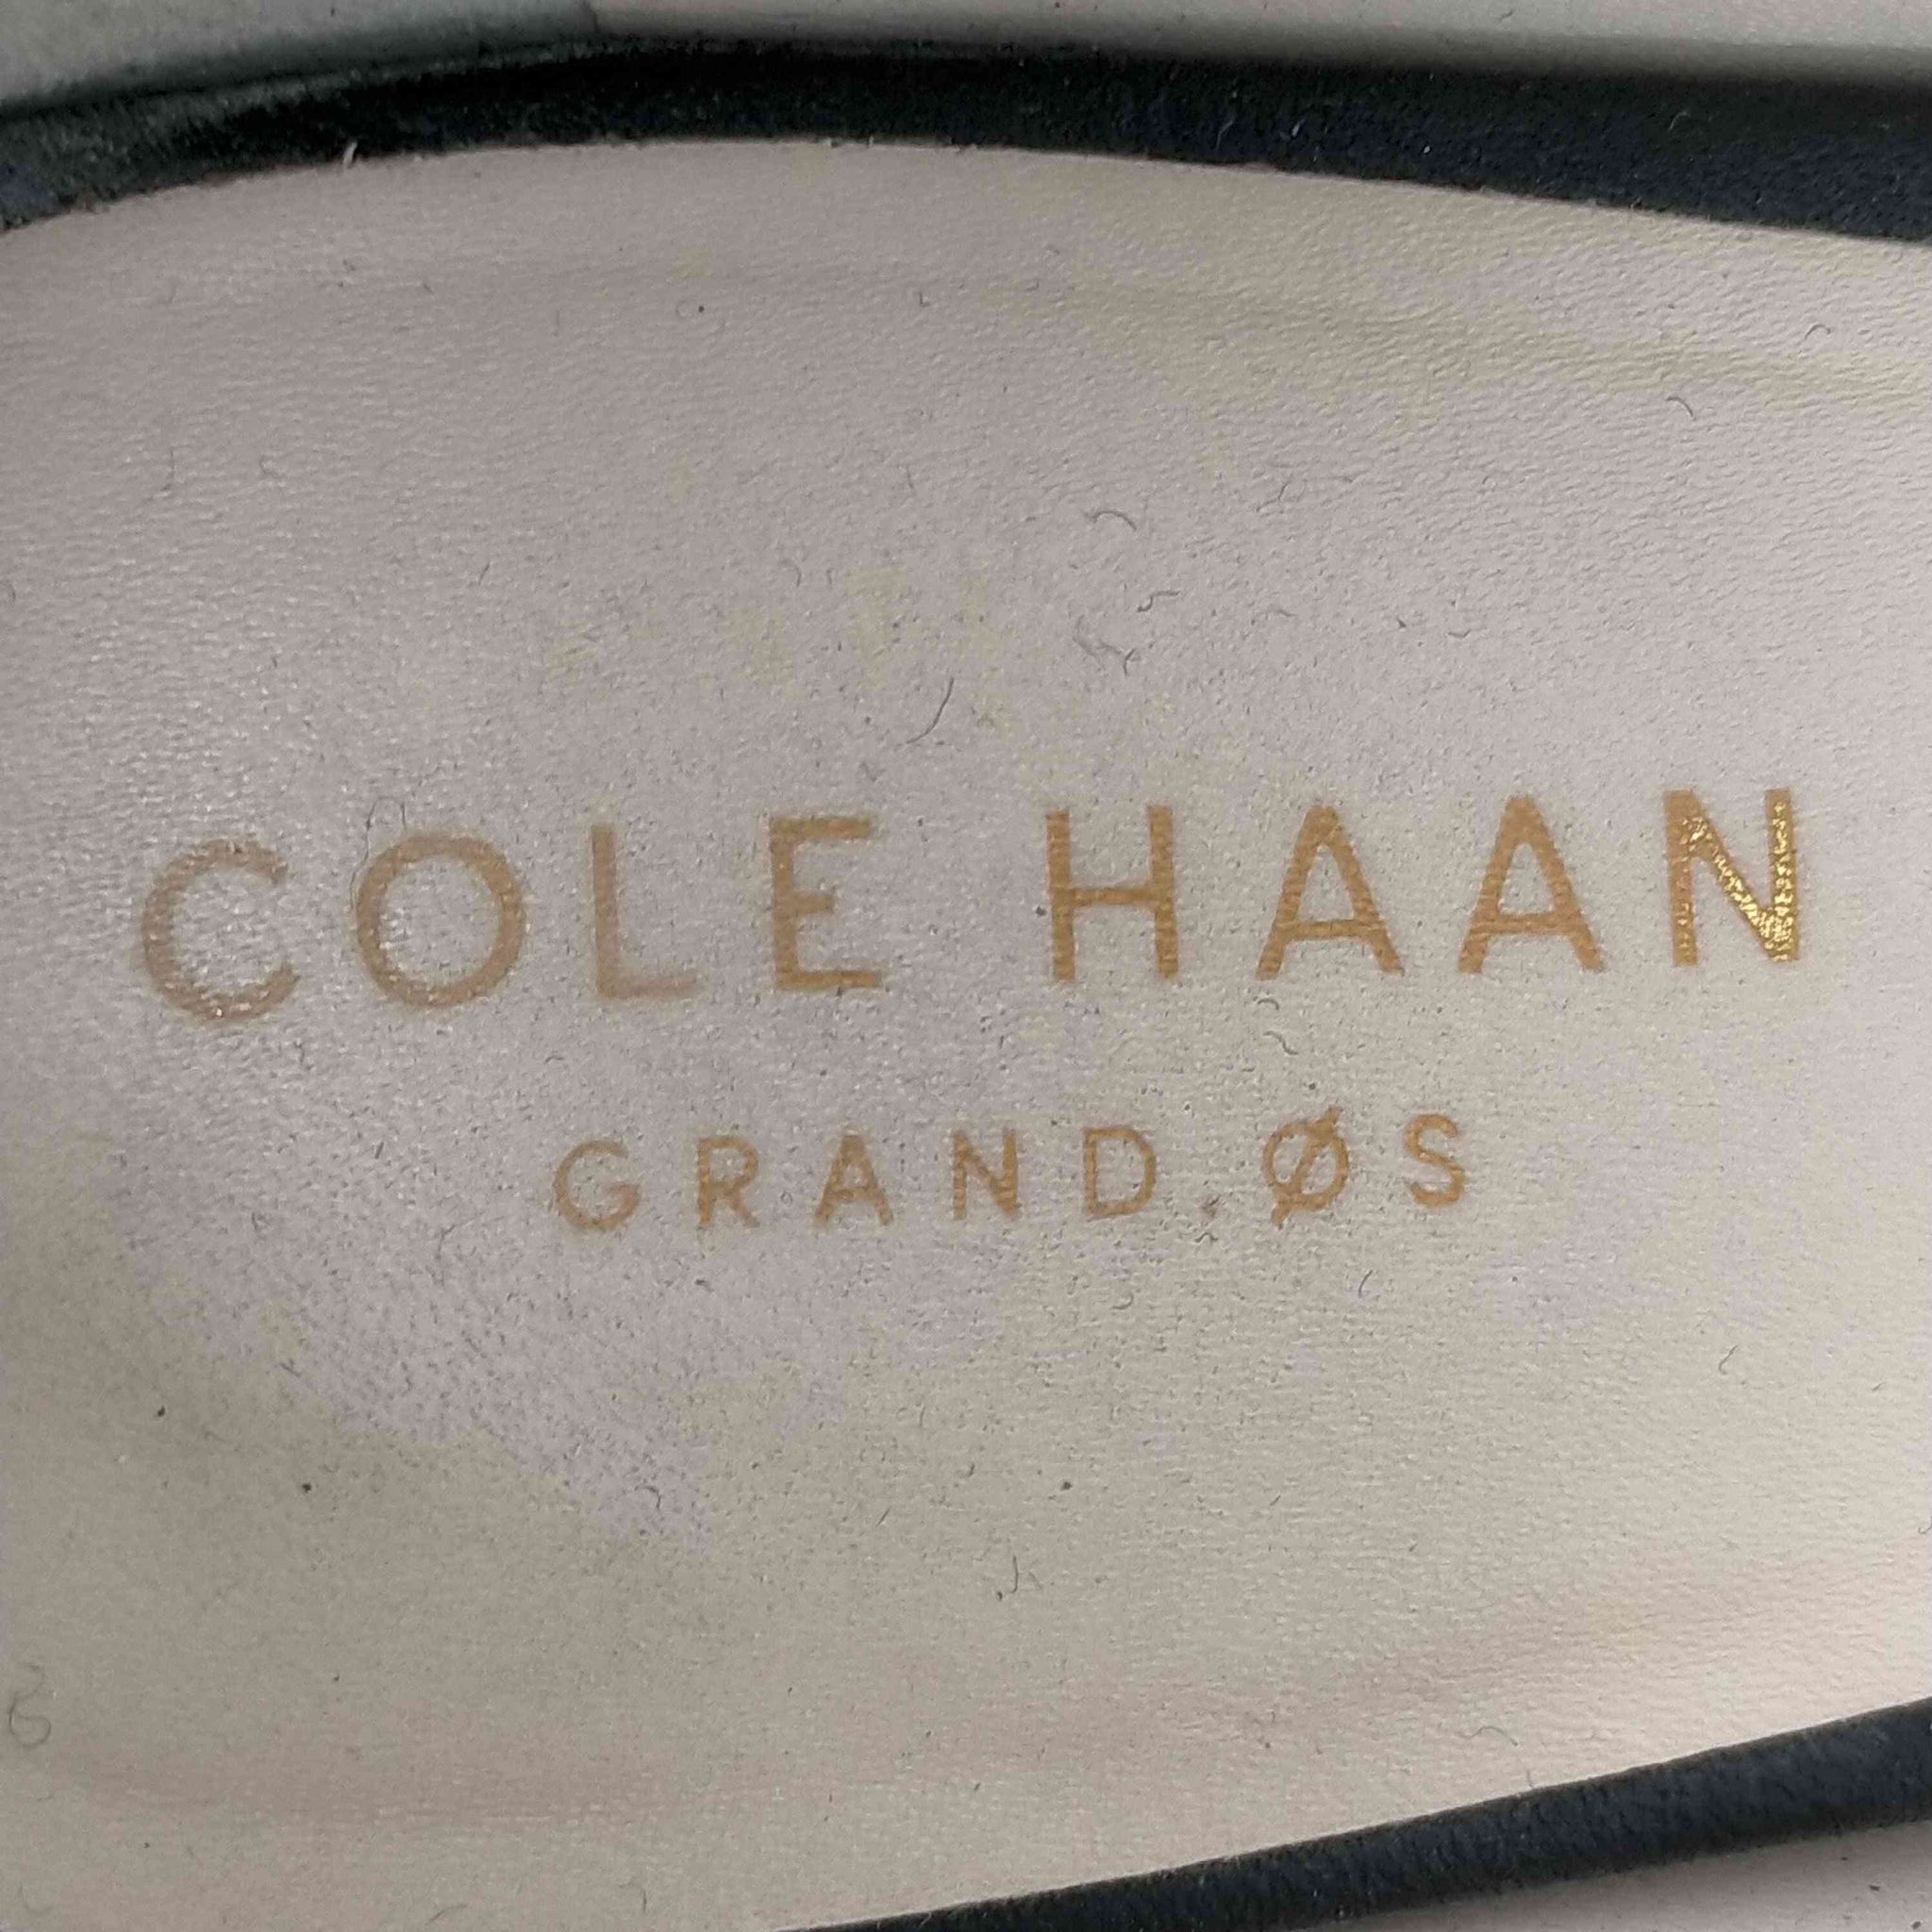 COLE HAAN(コールハーン)ヒールパンプス